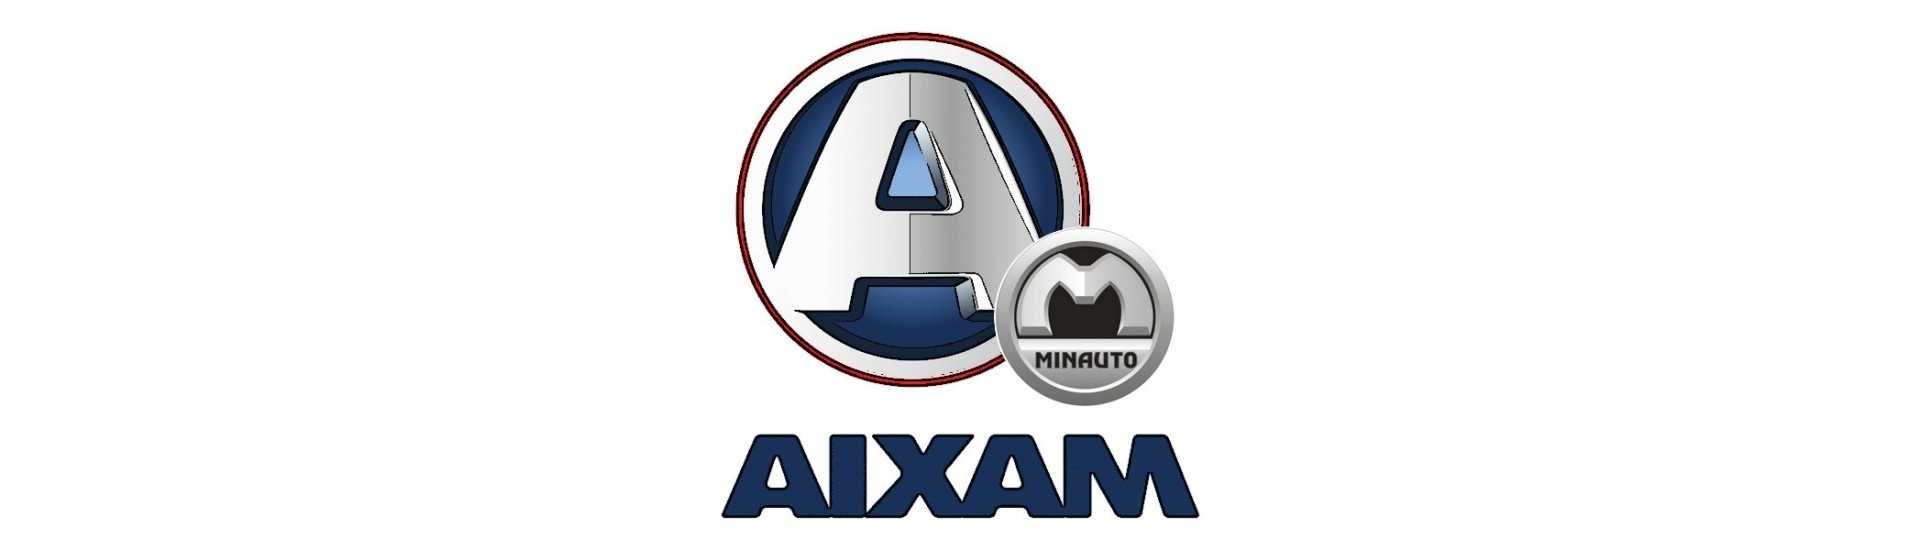 Commodo zum besten Preis für Autos ohne Lizenz Aixam Minauto